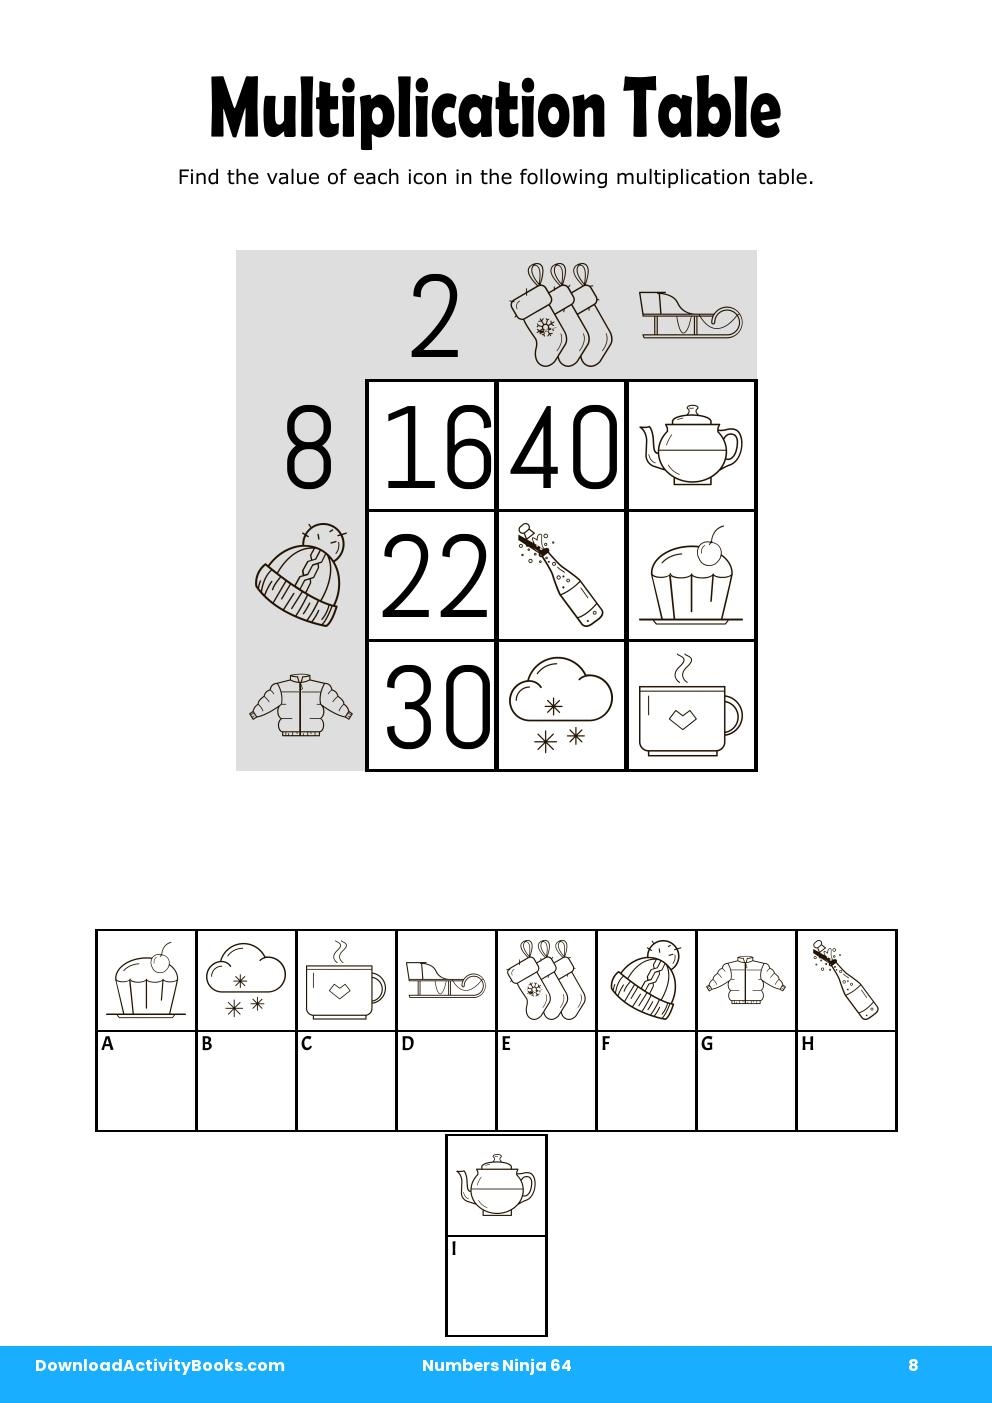 Multiplication Table in Numbers Ninja 64